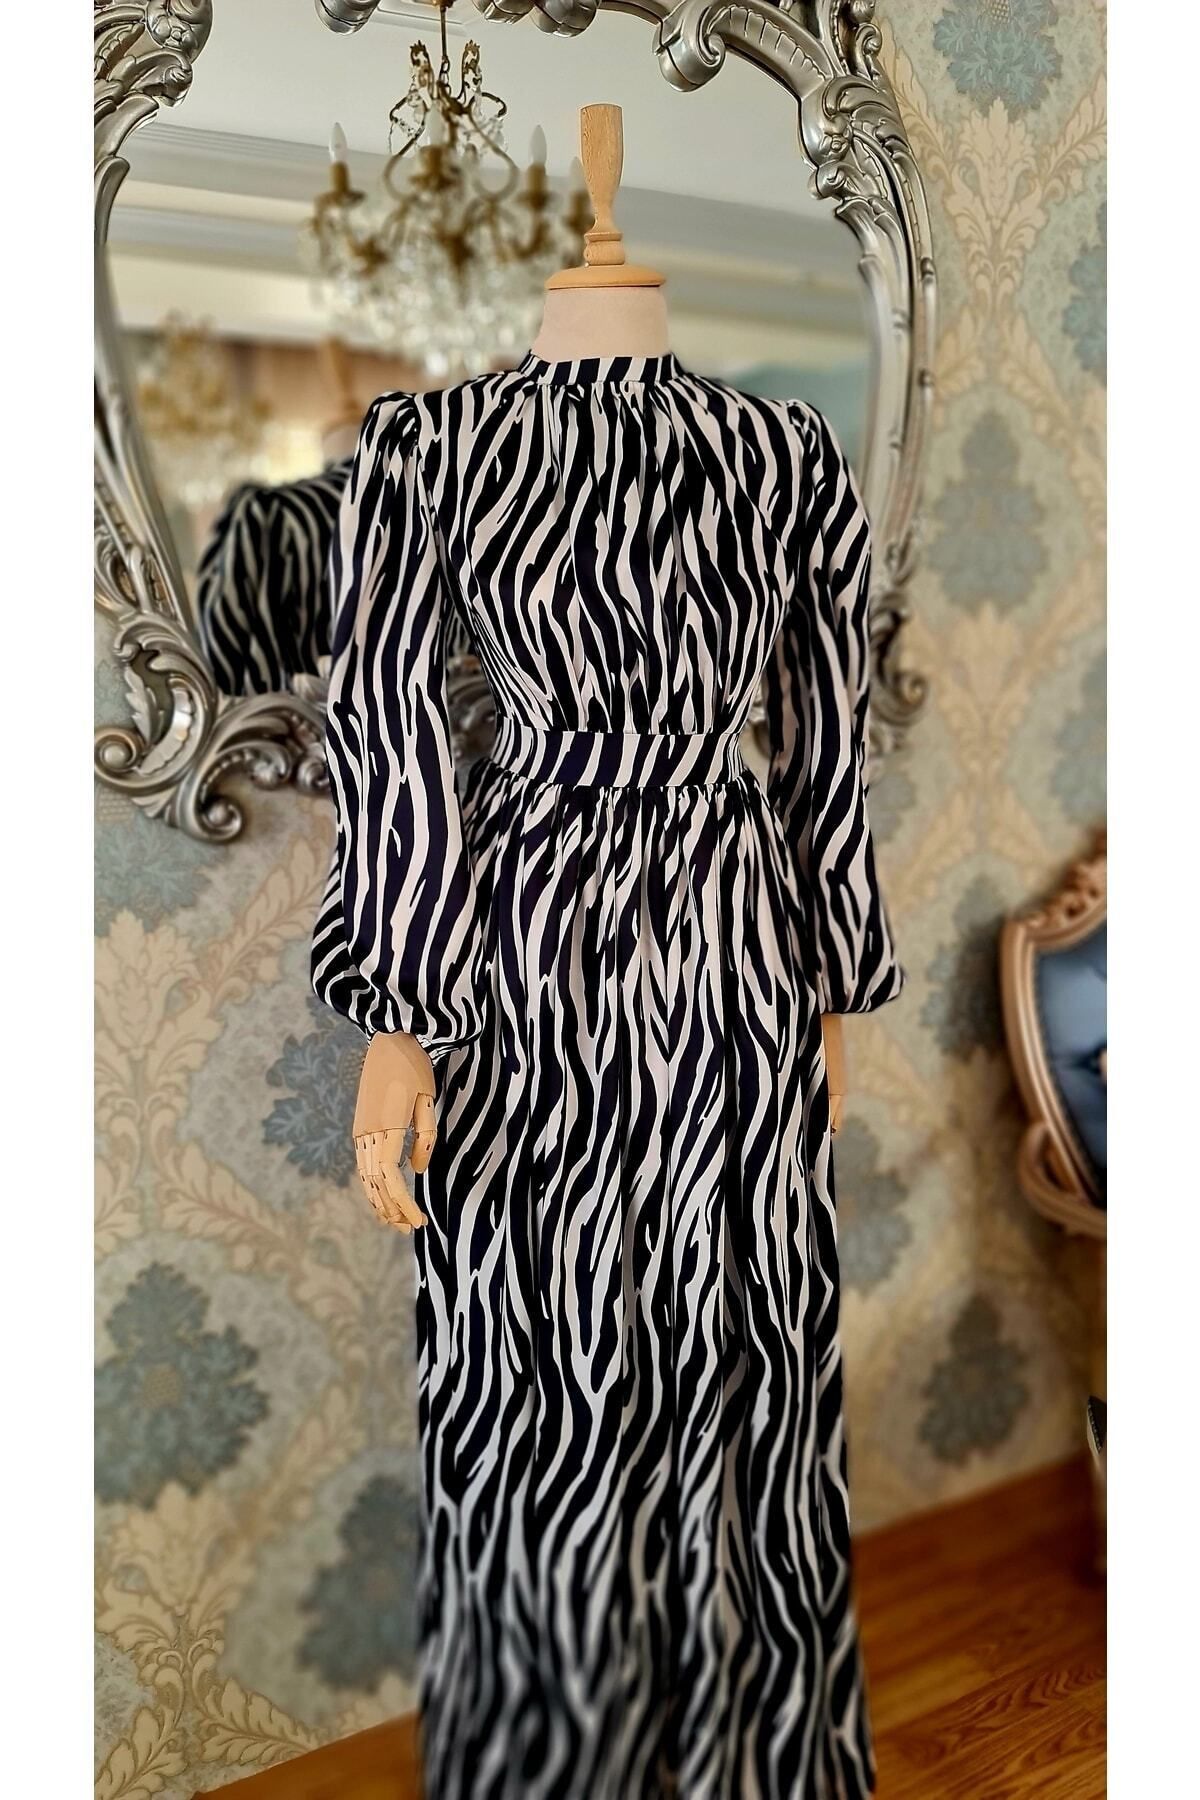 makbuleofficial Zebra Desenli Krep Saten ,yakada Büzgü Detaylı Tesettür Elbise